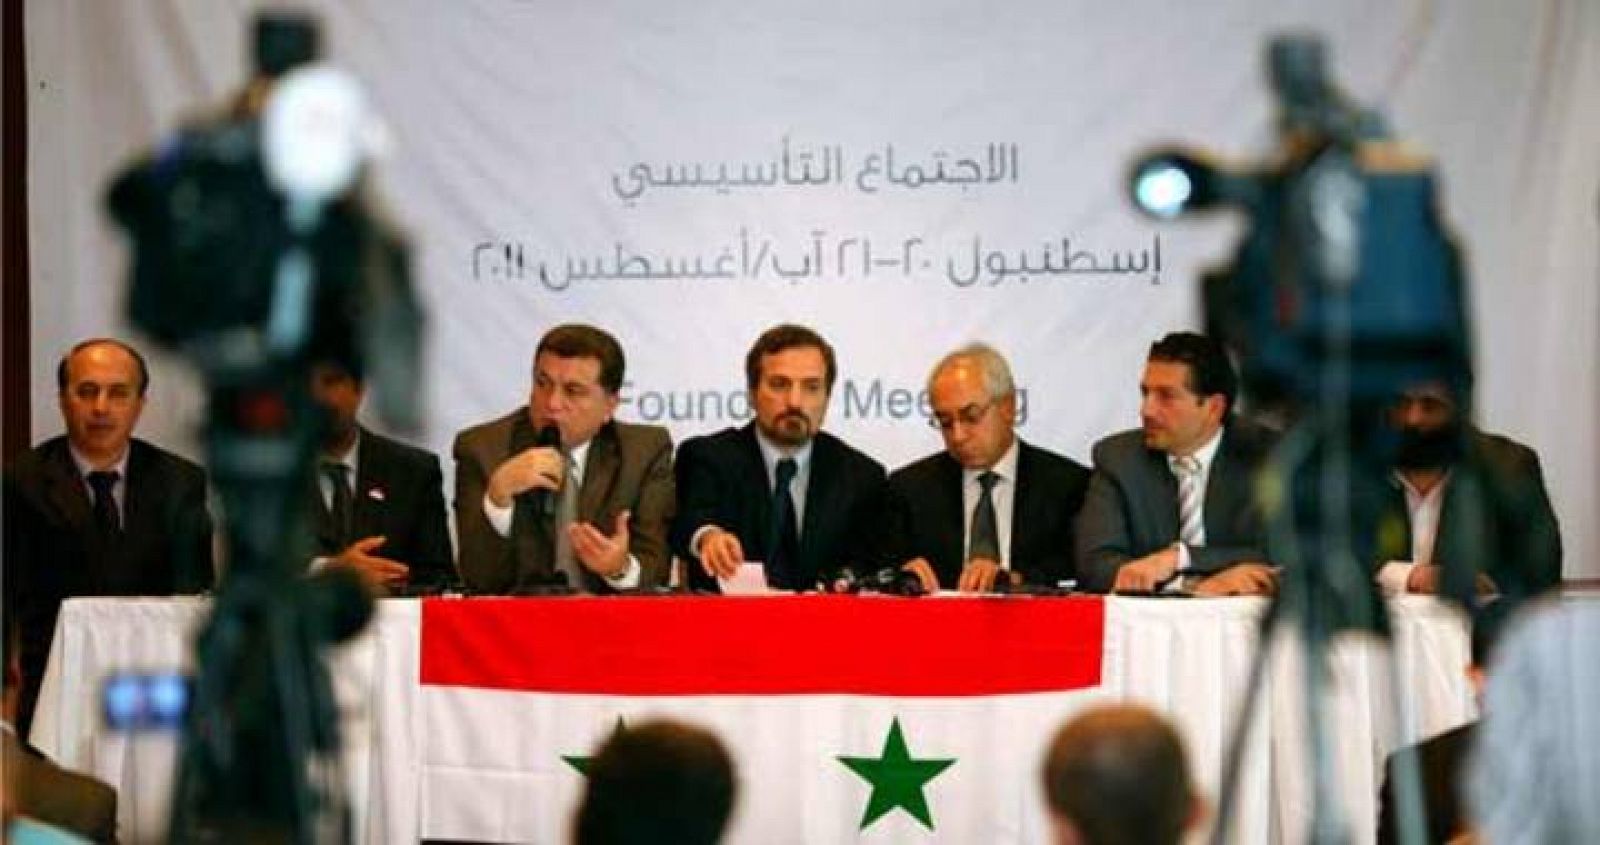 La oposición siria anuncia la creación de un Consejo Nacional para derrotar al régimen de Al Asad